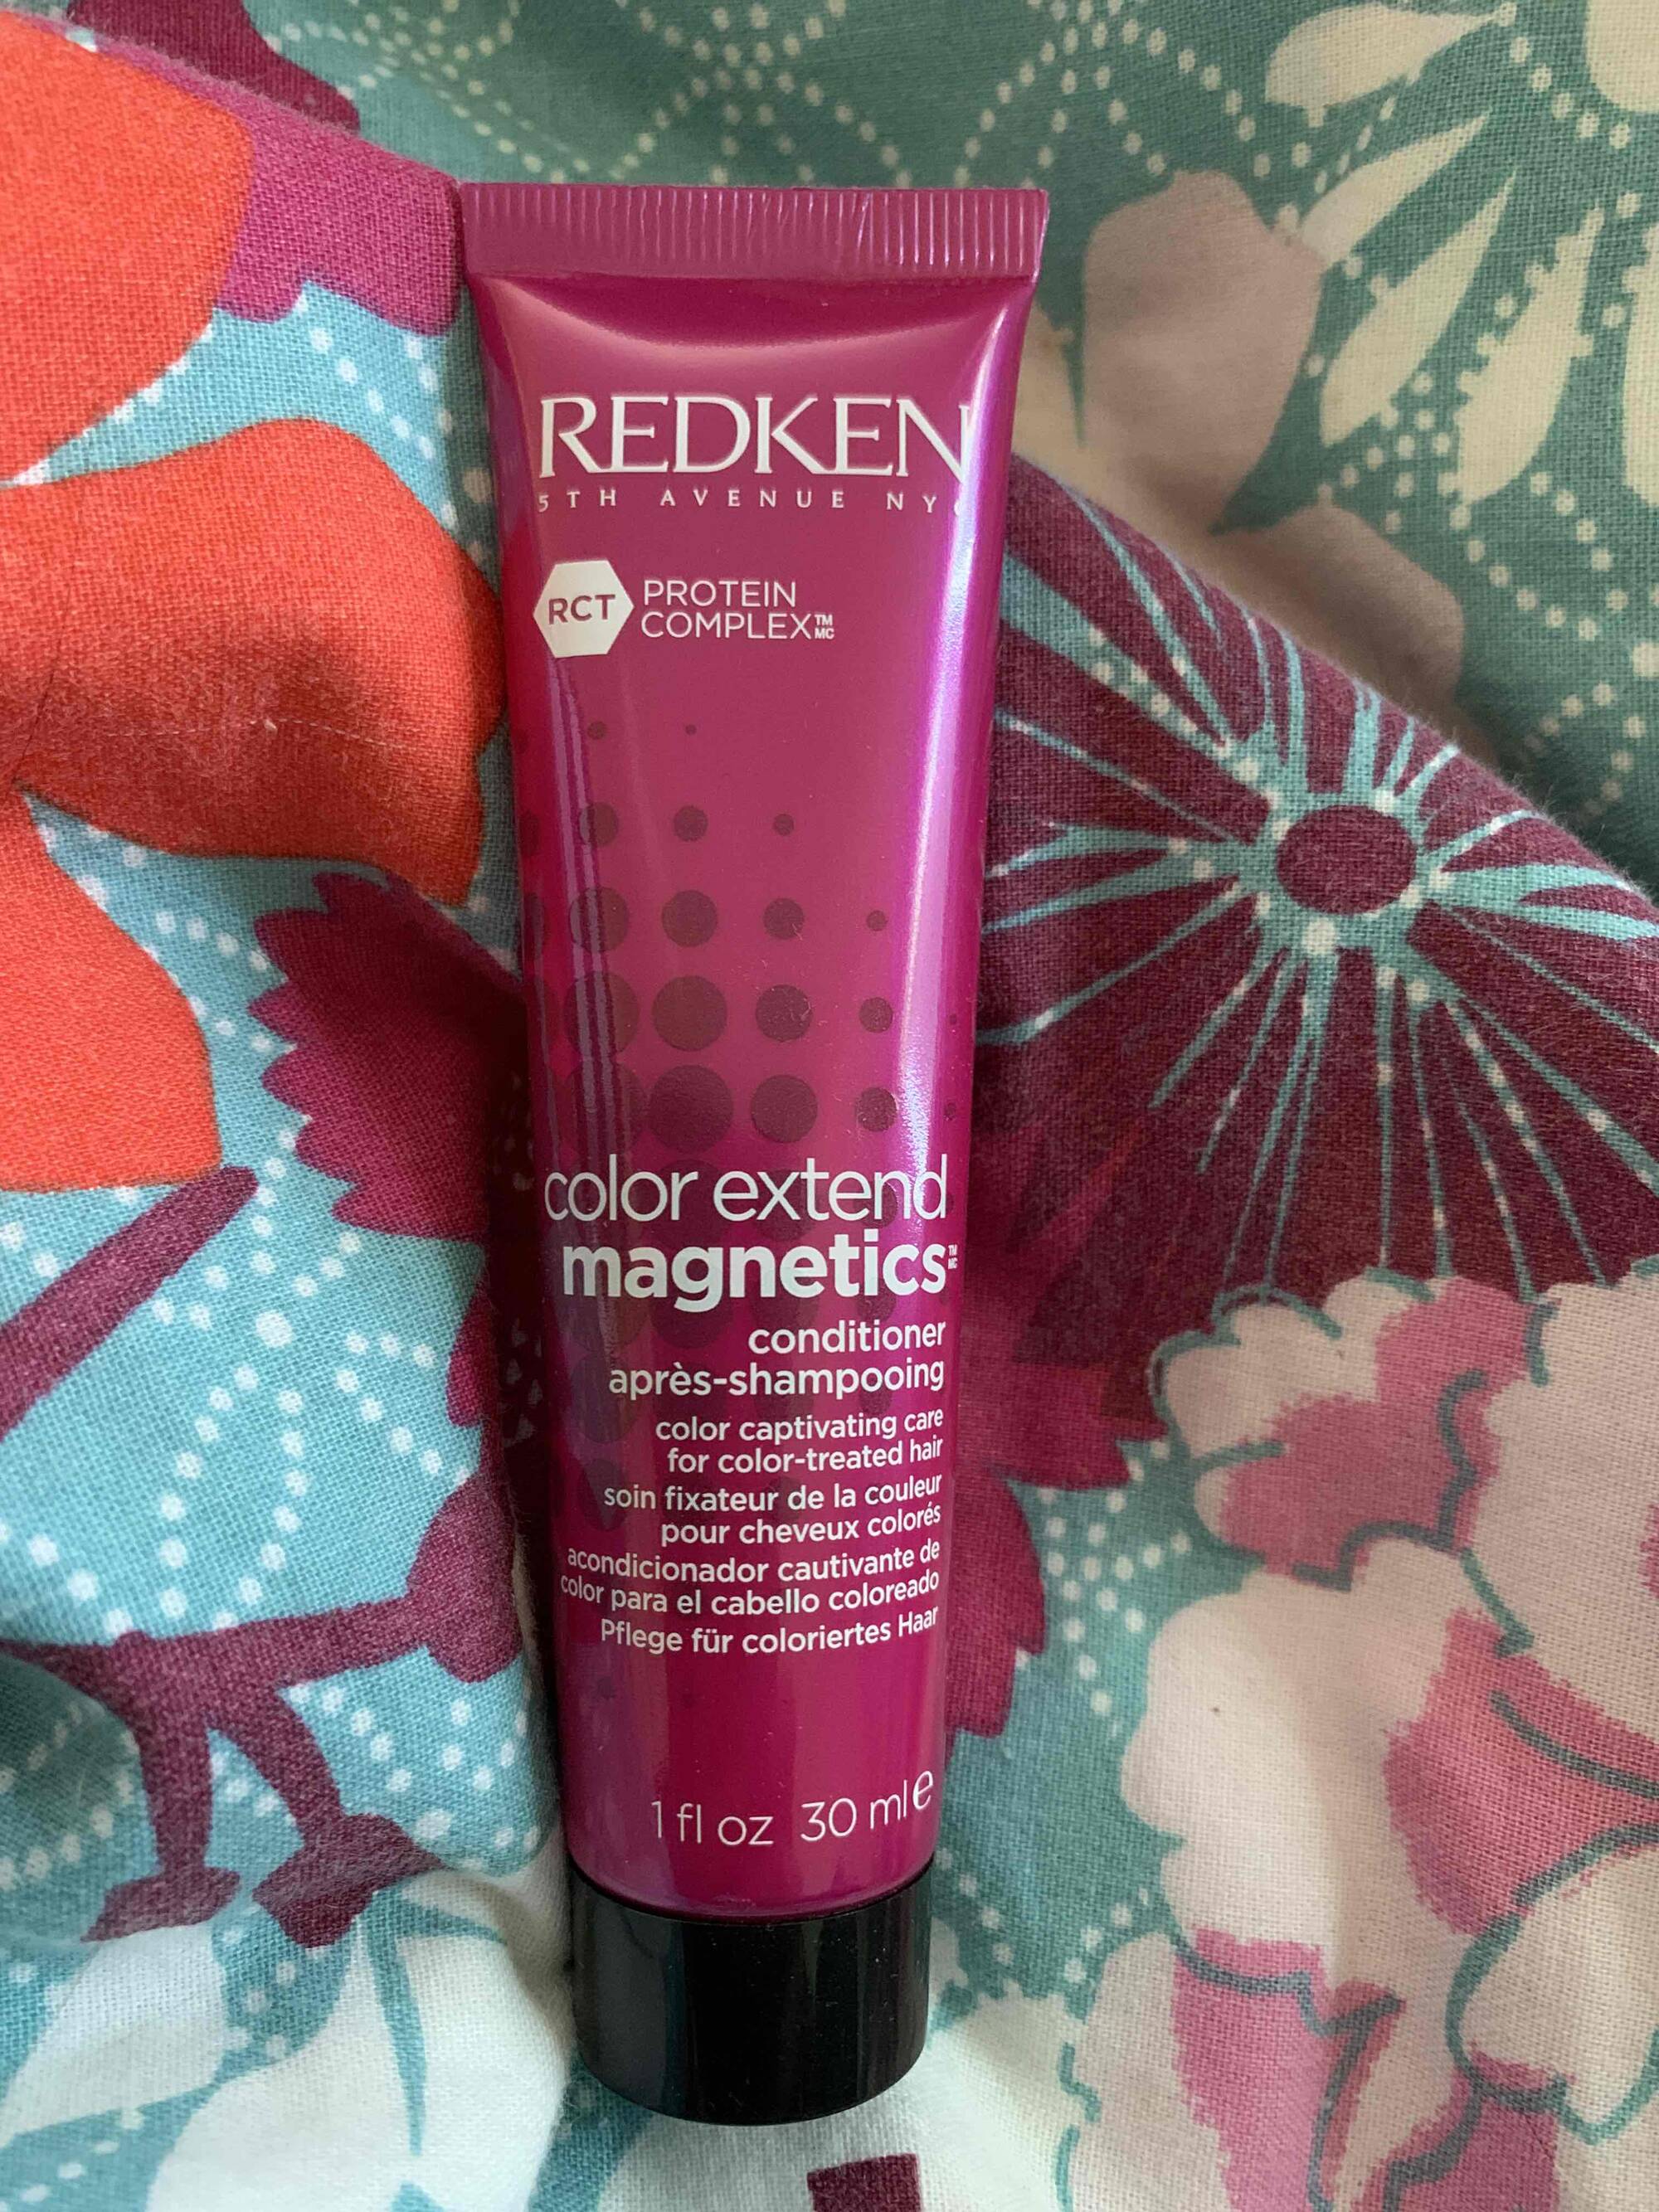 REDKEN - Color extend magnetics - Après-shampooing